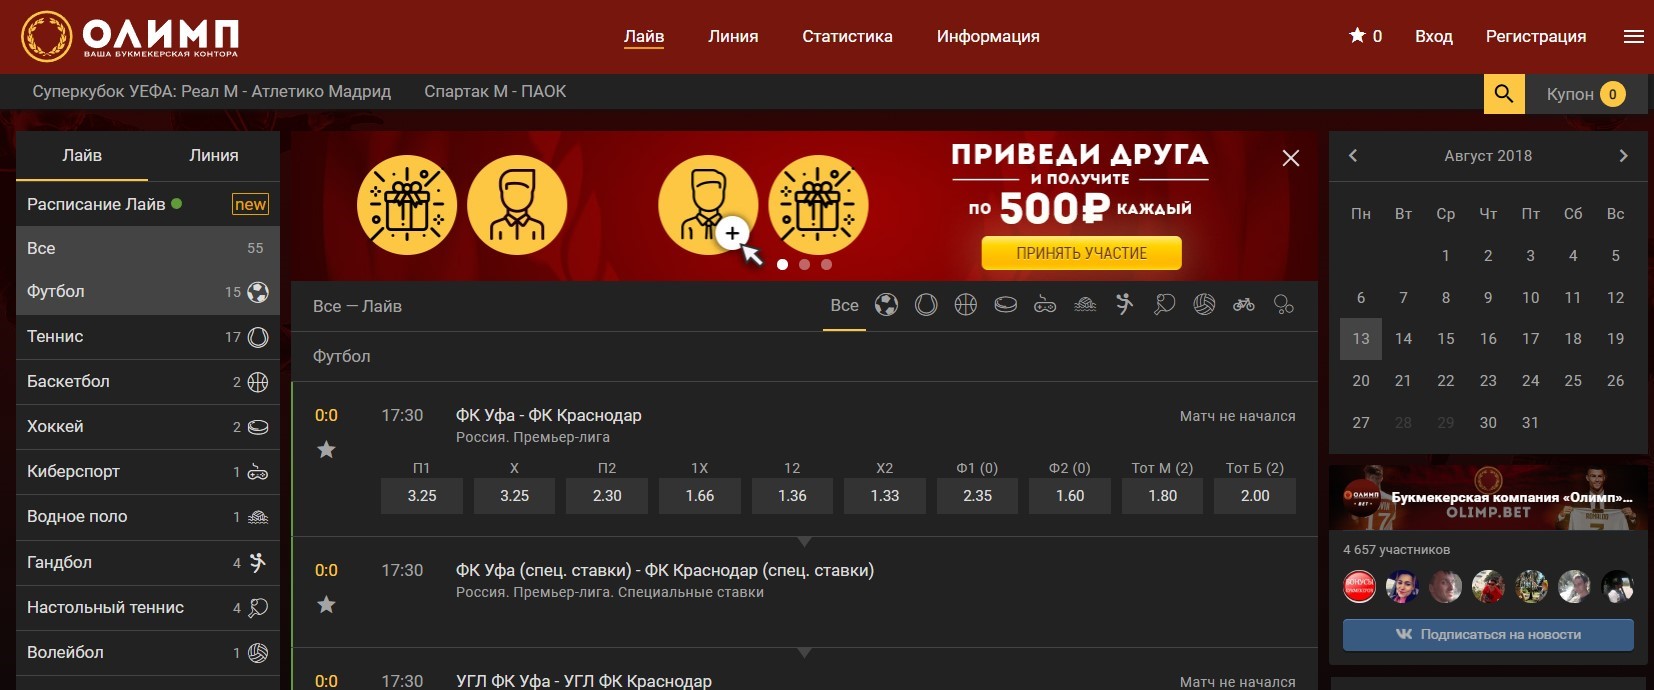 Olimp bet casino официальный сайт чат рулетка скачать на андроид последняя версия бесплатно онлайн с телефона